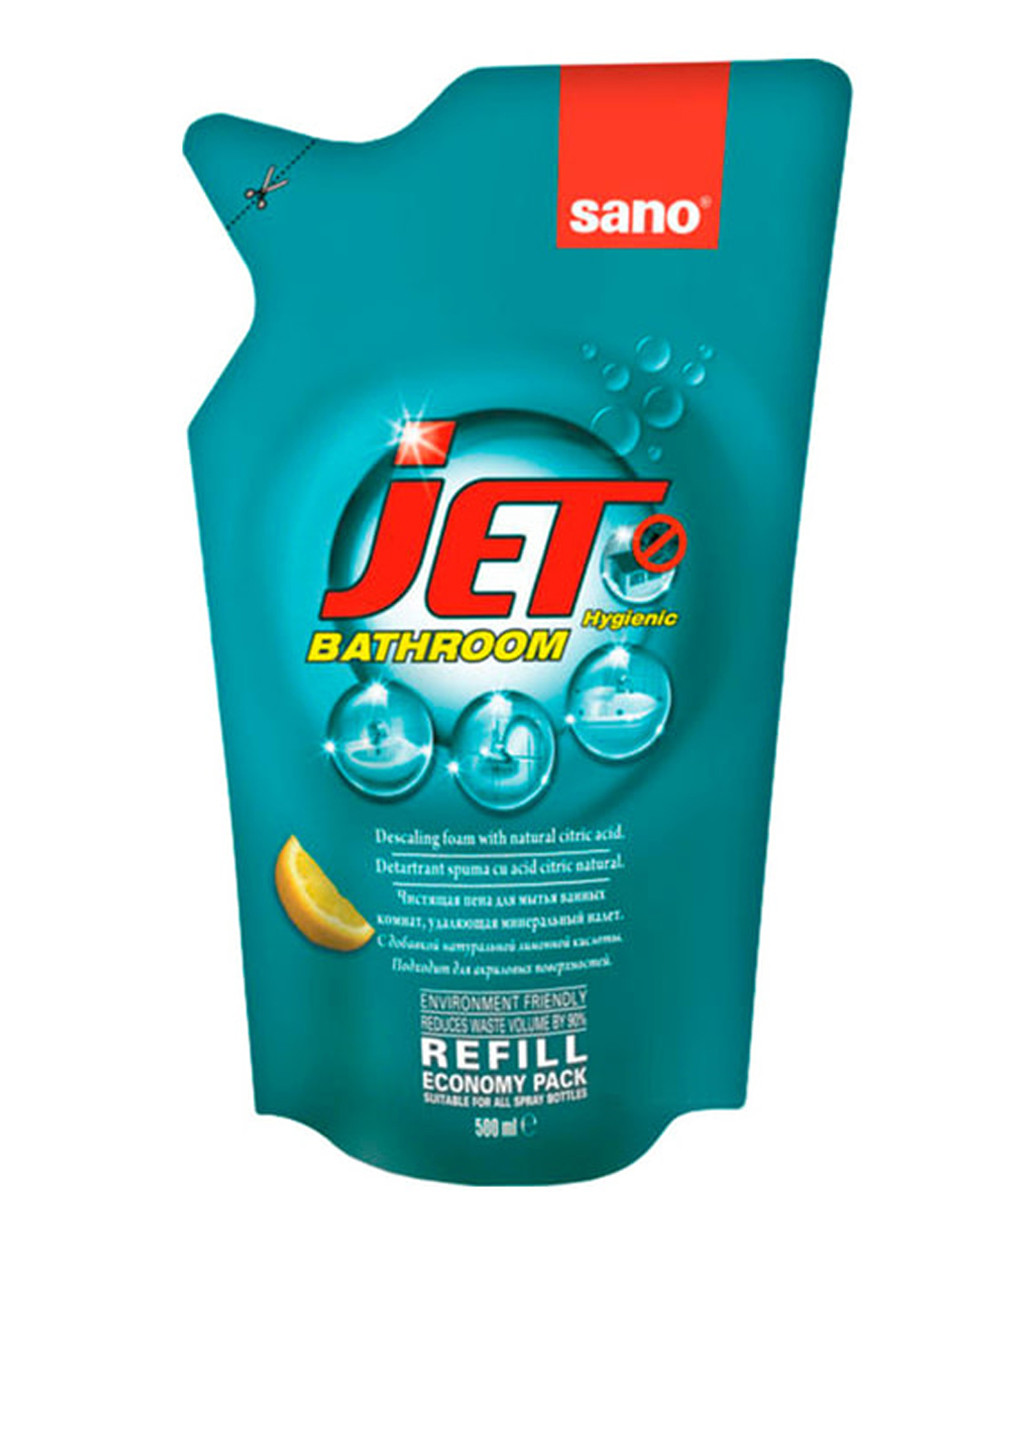 Засіб для чищення акрилових поверхонь Jet Bathroom, 500 мл Sano